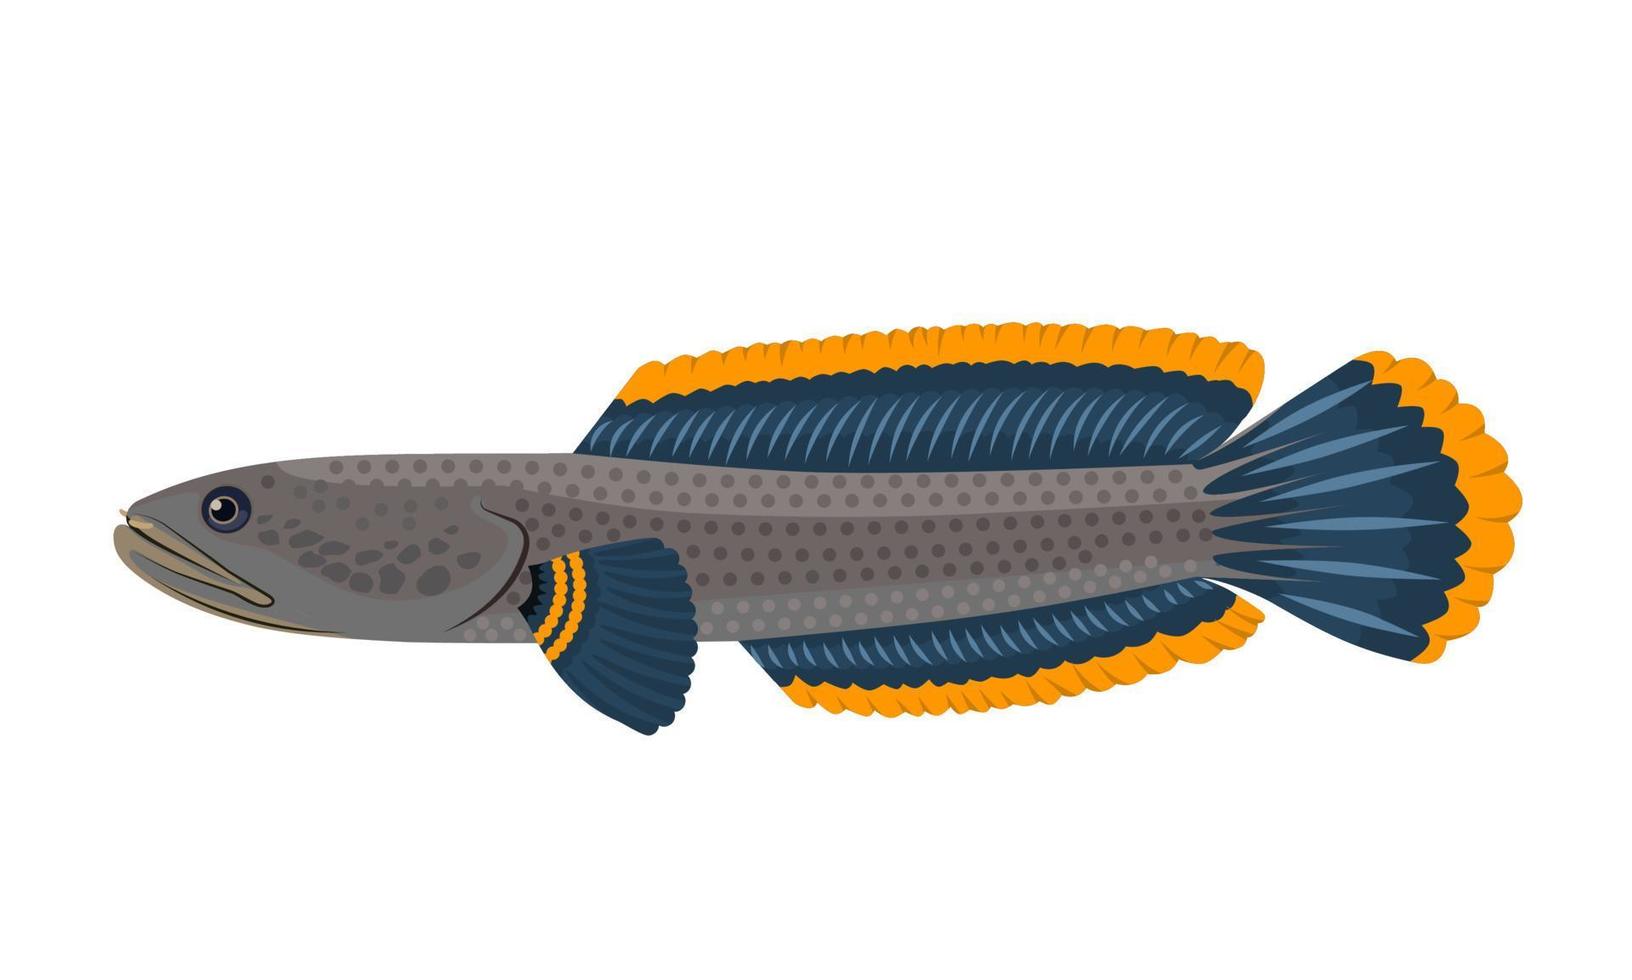 vektor illustration av channa limbata fisk eller ormhuvud fisk, isolerad på en vit bakgrund.